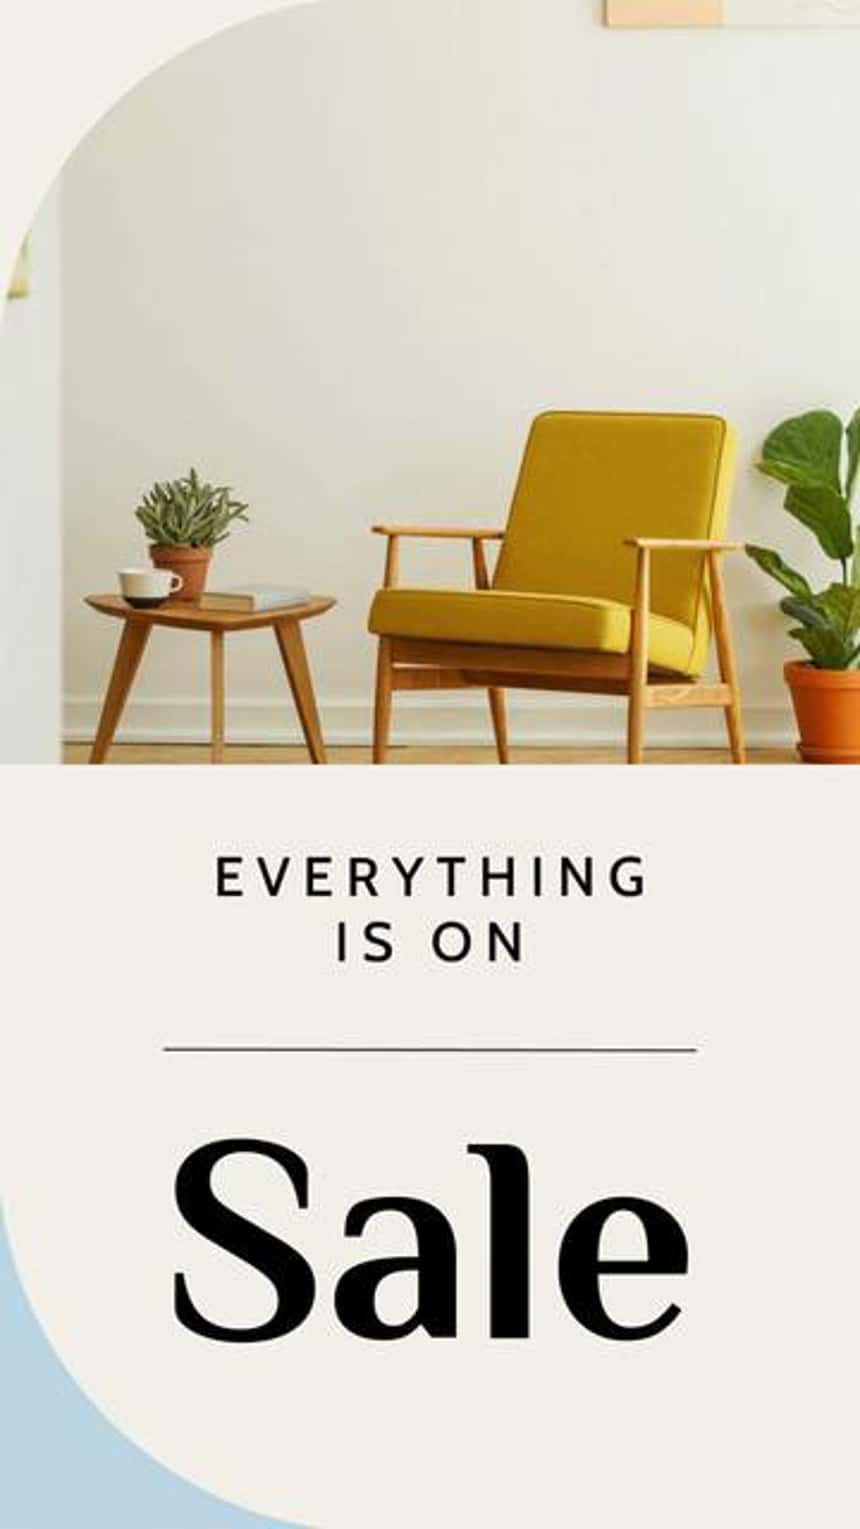 Instagram视频广告模板家具业务特色的形象一个黄色的椅子上,植物,和侧表。文本图像读取\